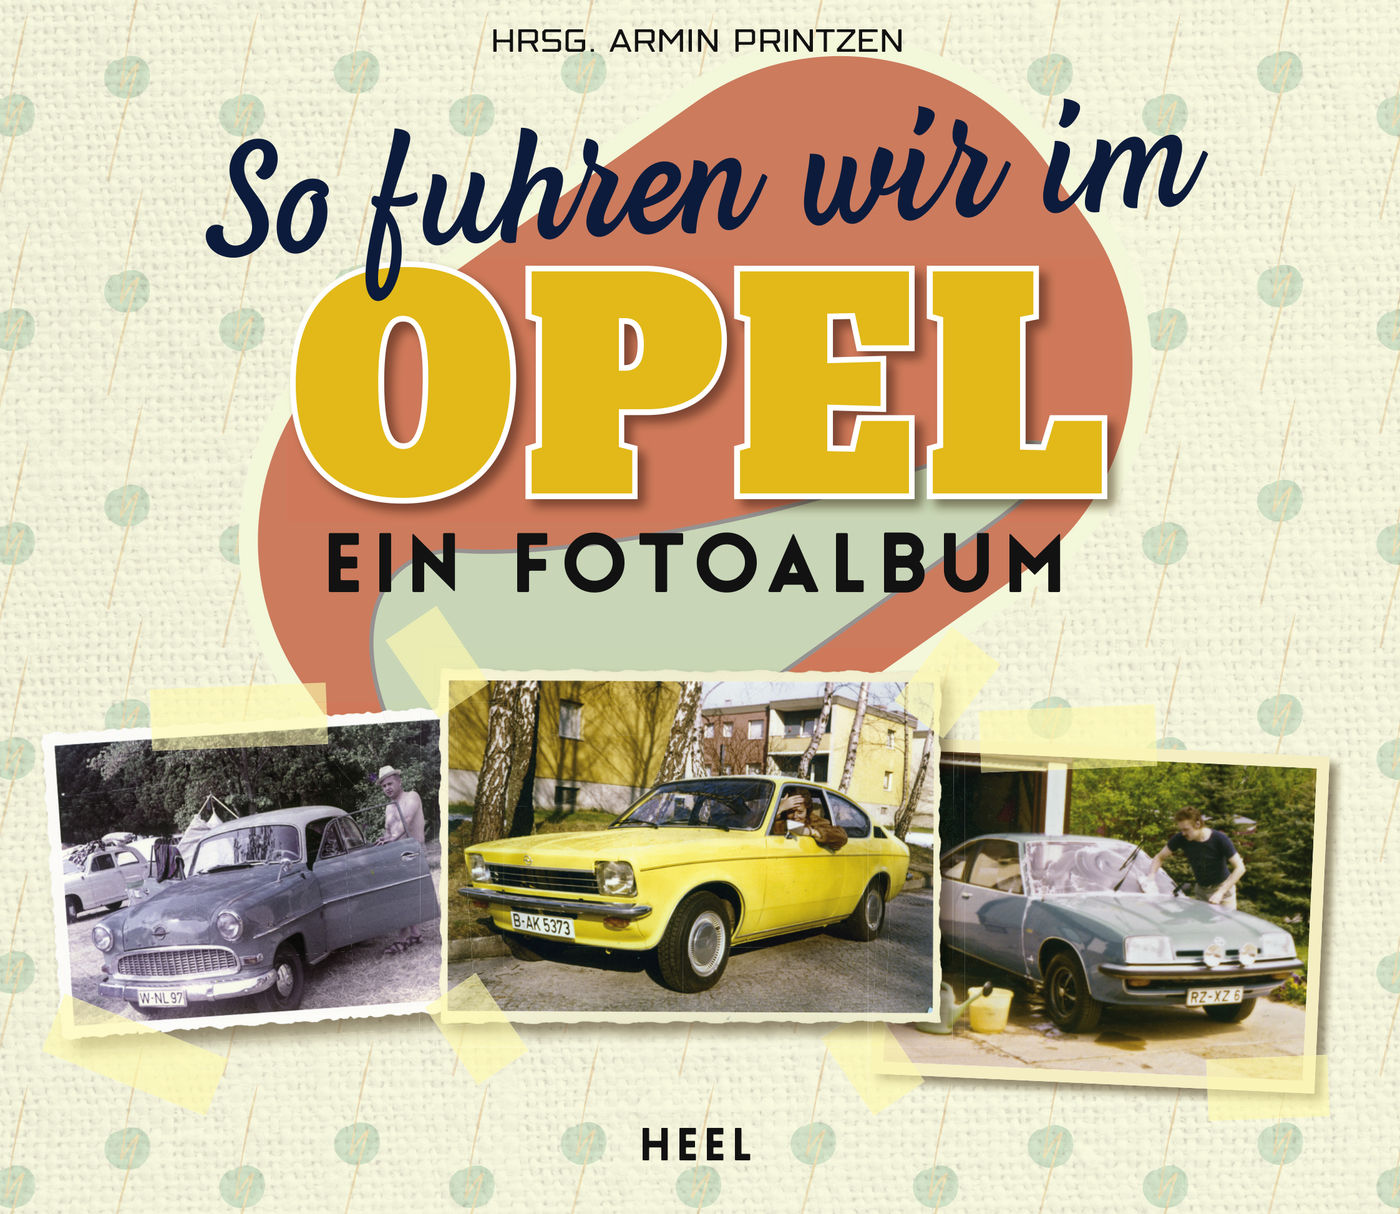 So fuhren wir im Opel
So fuhren wir im Opel